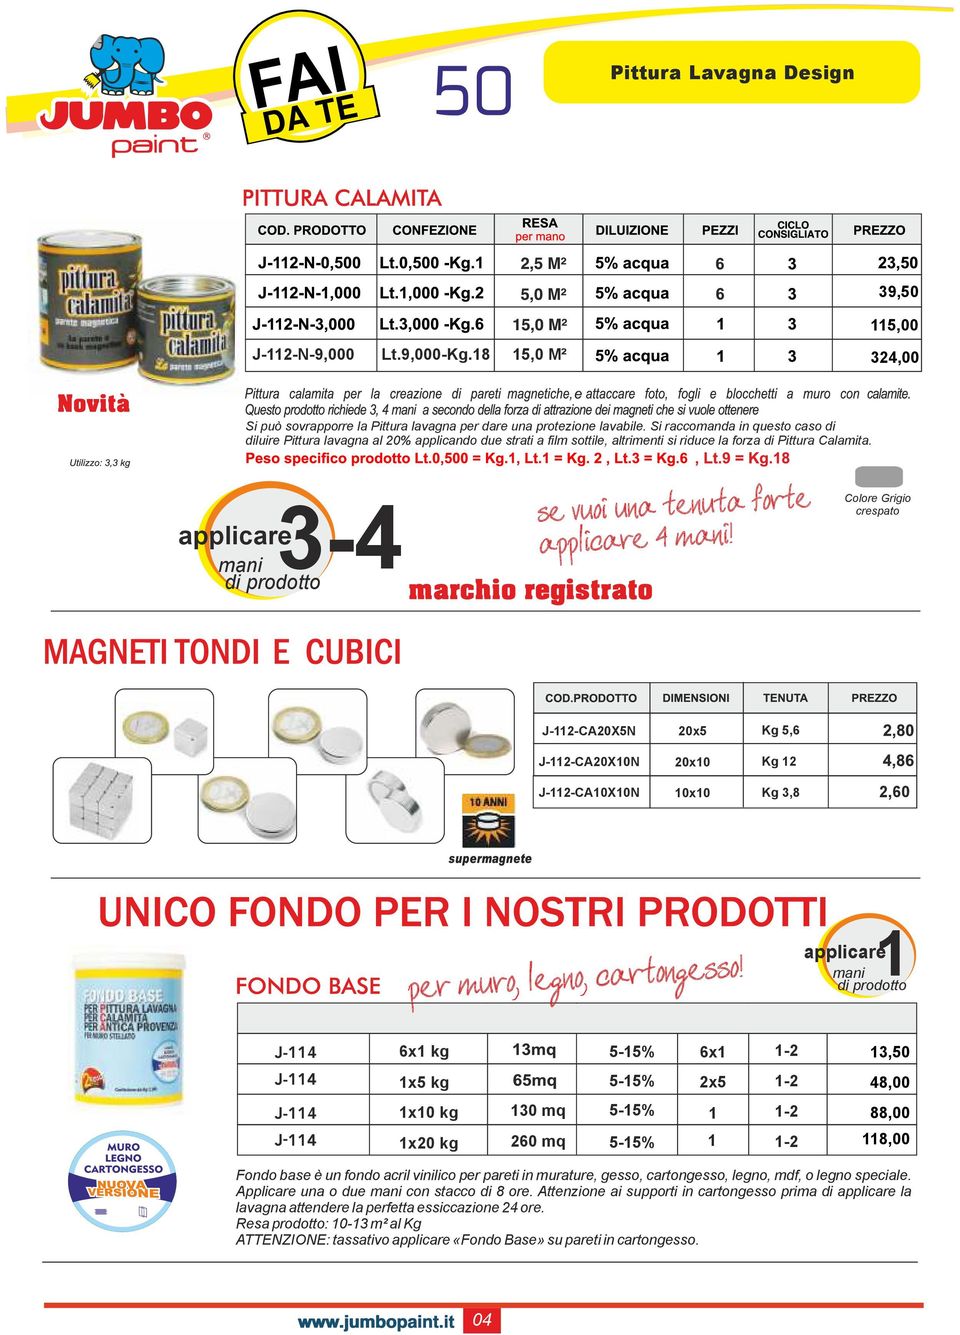 3-4 applicare mani di prodotto Colore Grigio crespato J-112-CA20X5N 20x5 Kg 5,6 J-112-CA20X10N 20x10 Kg 12 J-112-CA10X10N 10x10 Kg 3,8 2,60 1 applicare mani di prodotto CICLO CONSIGLIATO 6x1 kg 5-15%